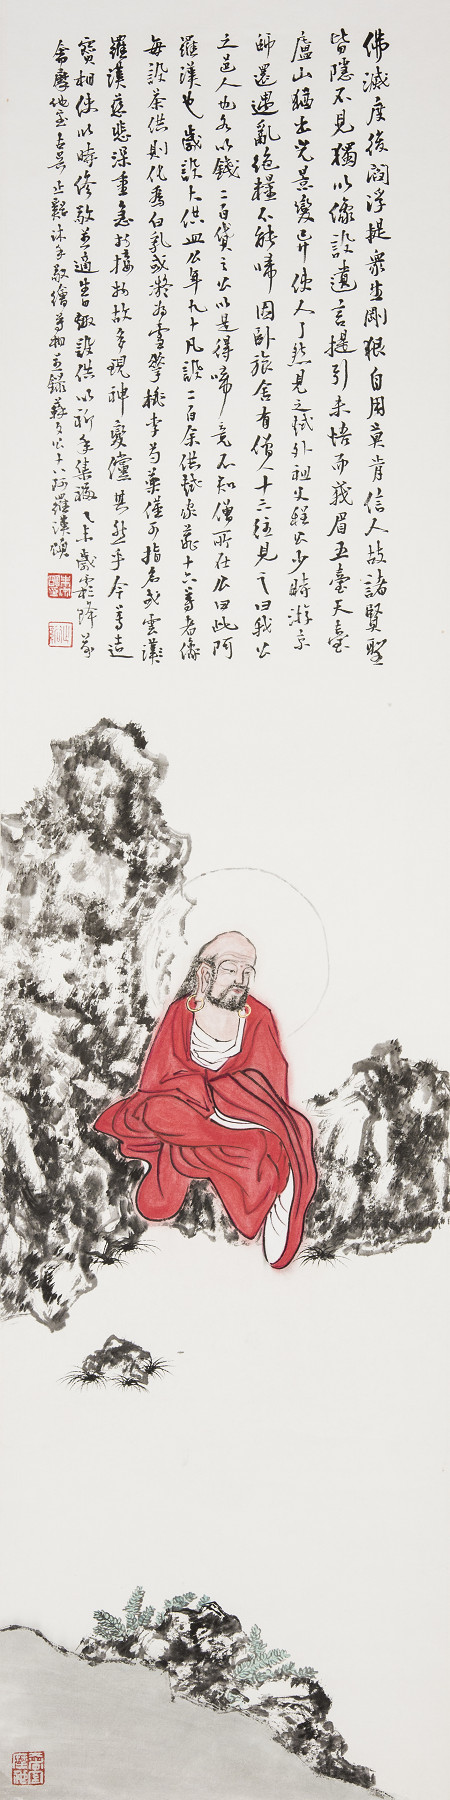 朱宗明人物畫作品《東坡十八羅漢頌》